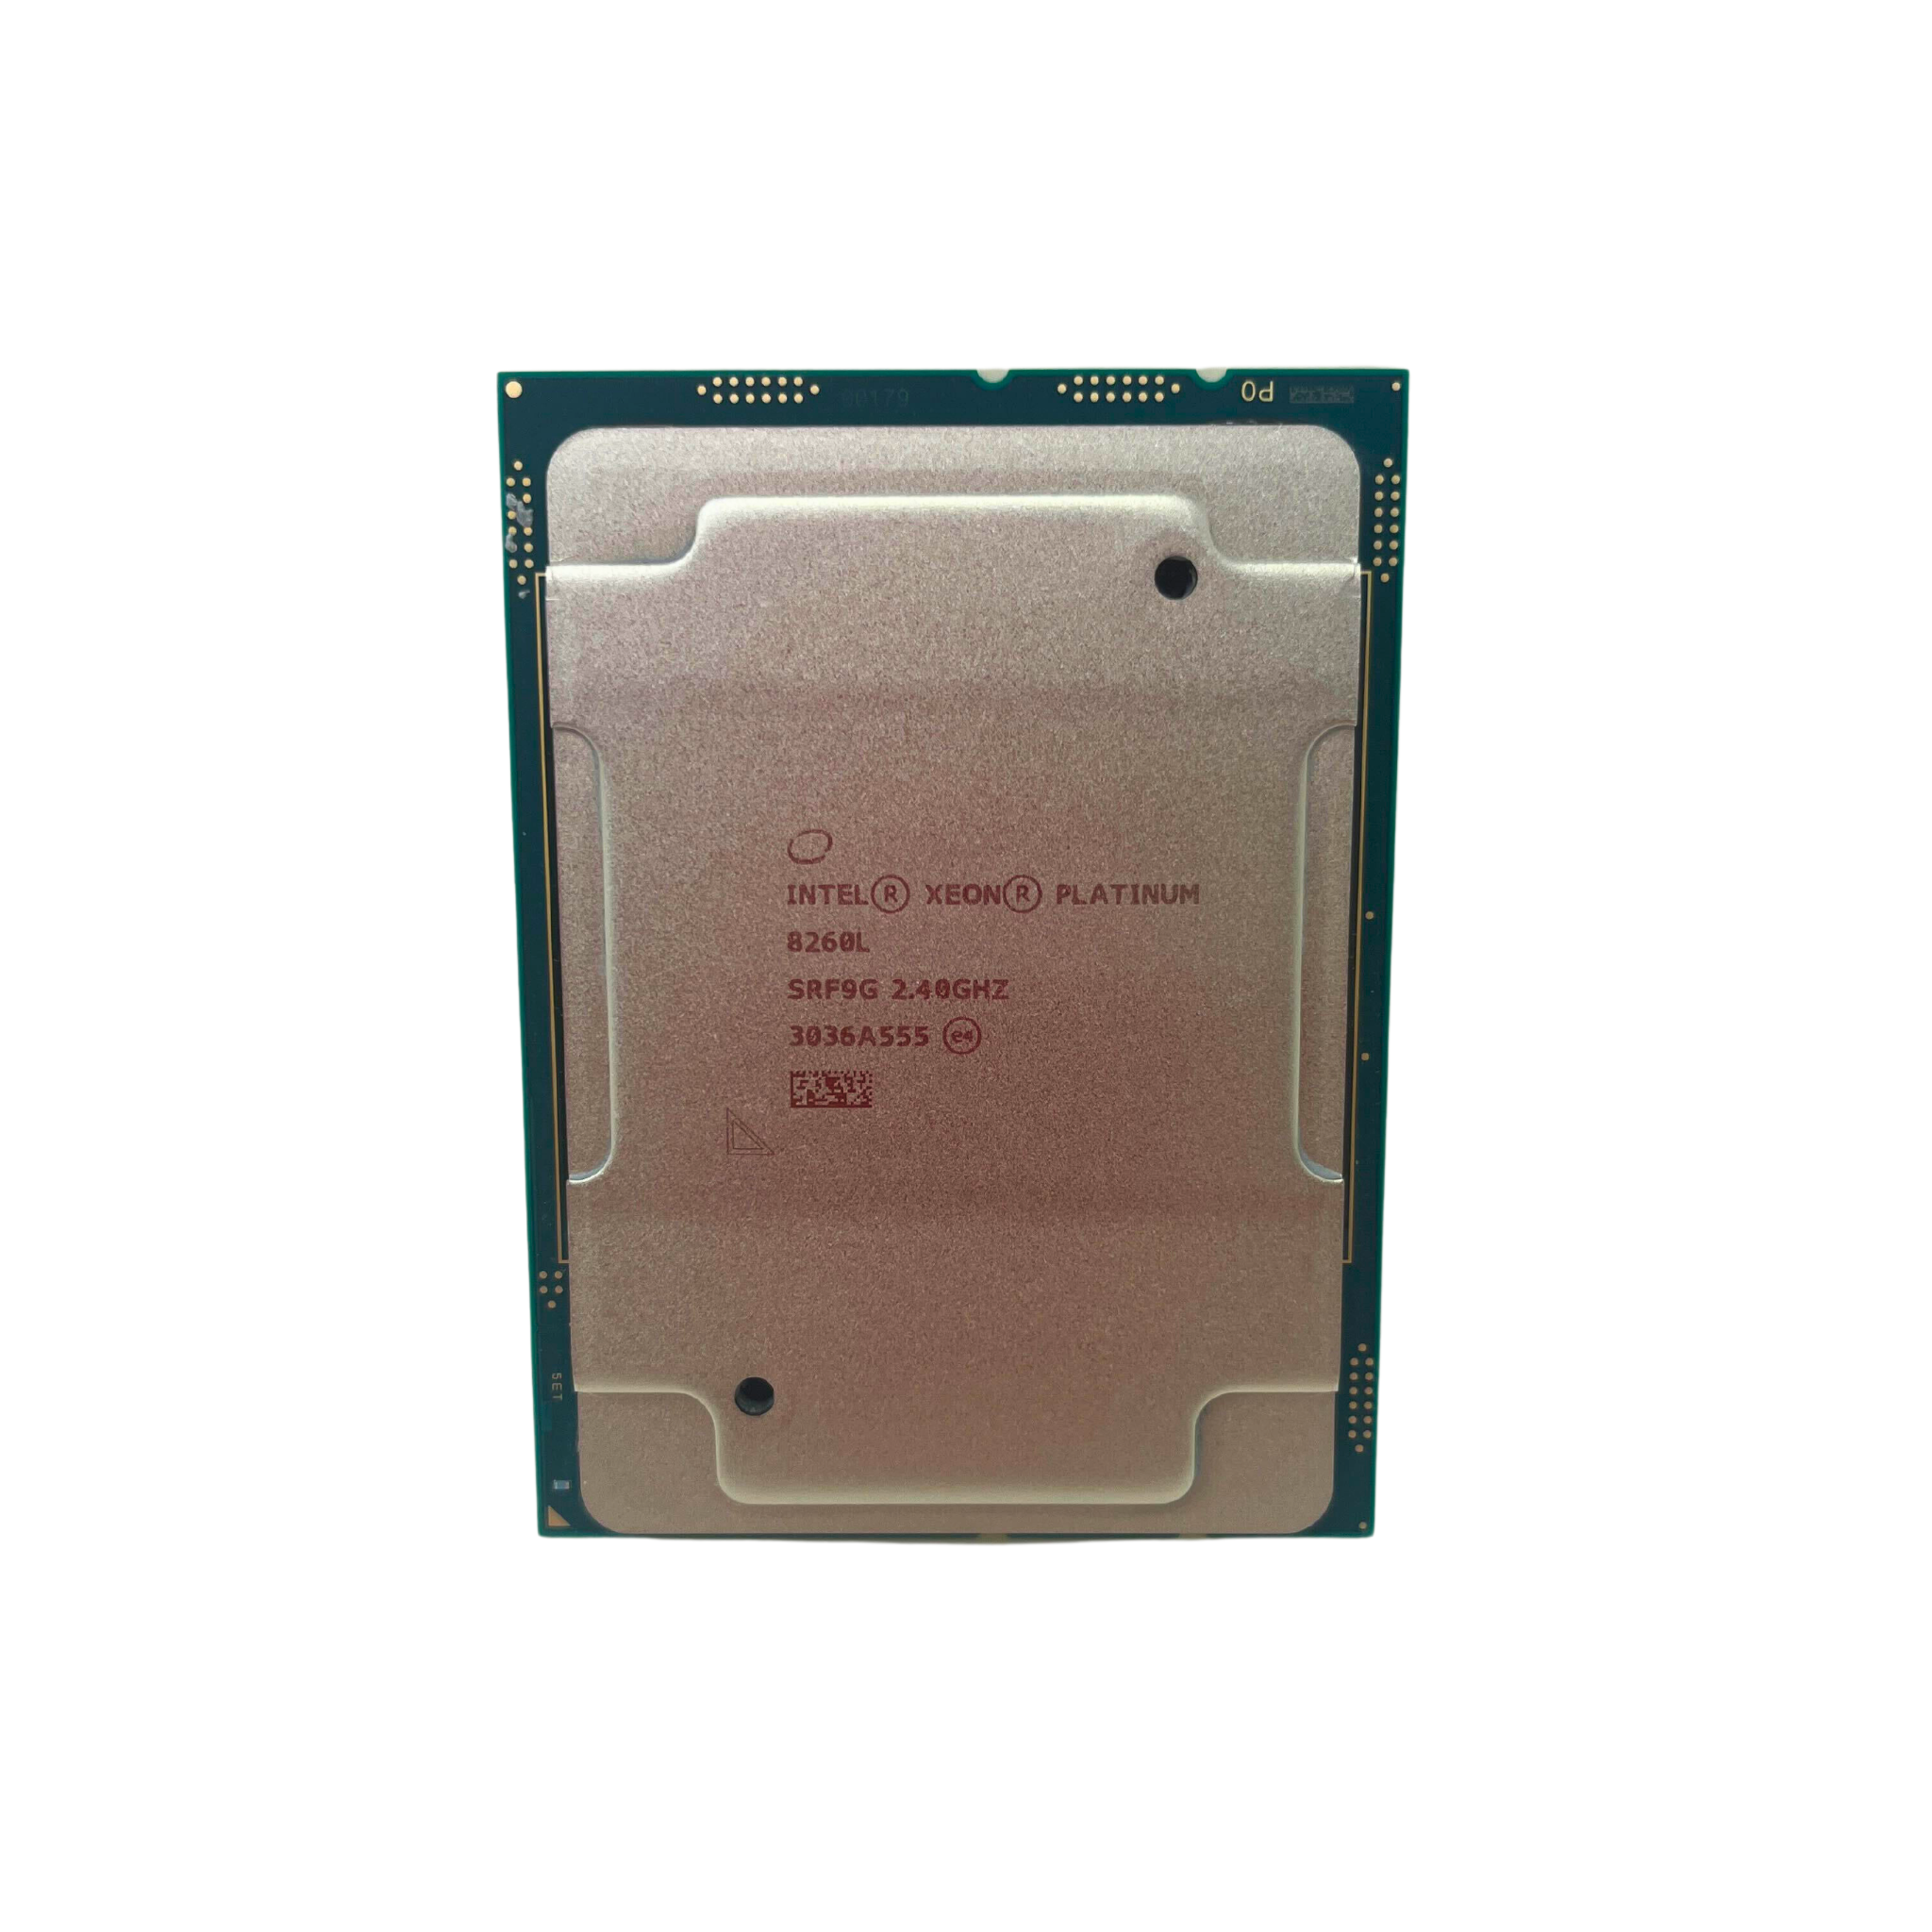 Intel Xeon Platinum 8260L  24 Core 2.40GHz 35.75MB L3 Cache 165W LGA3647 Processor (Xeon Platinum 8260L)